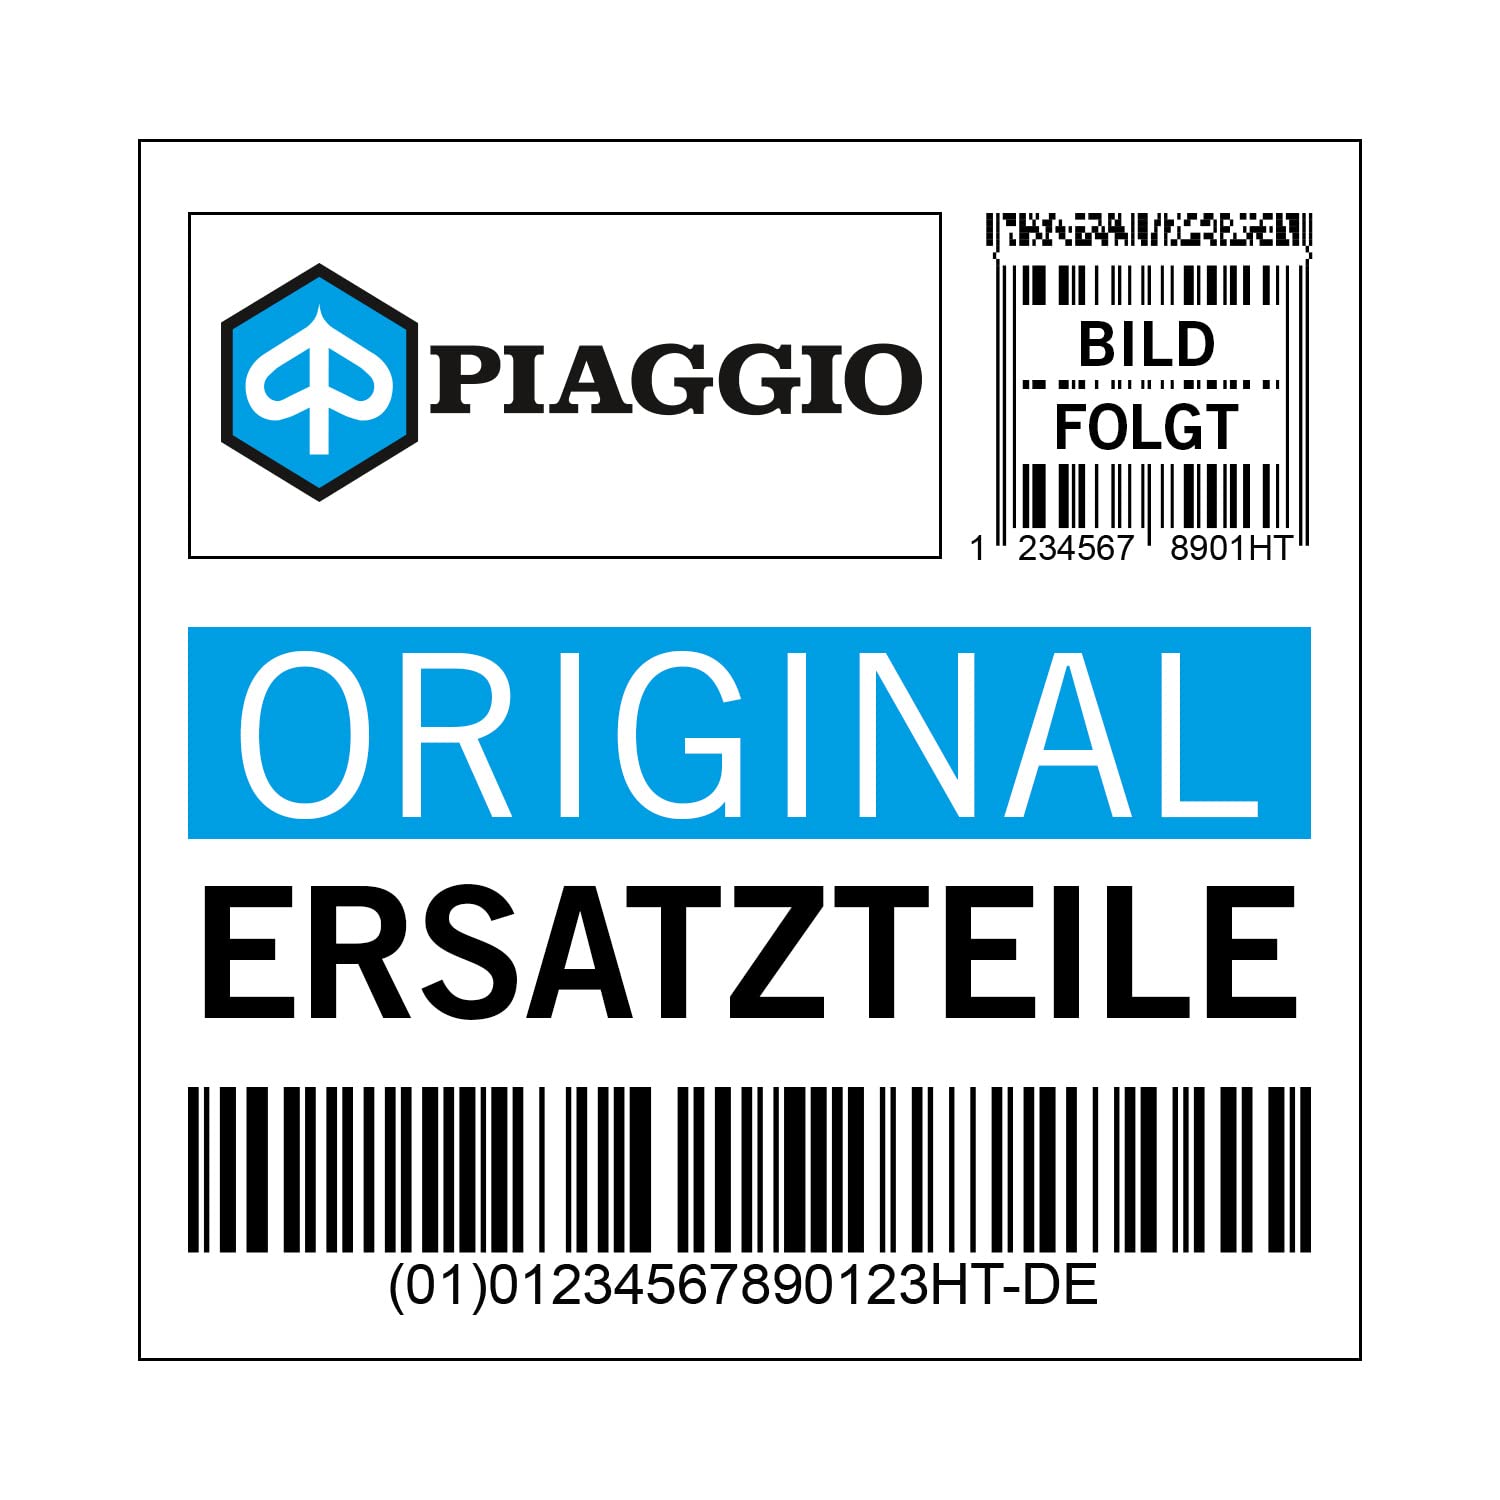 Abdeckung Piaggio Kühlergrillrahmen, schwarz, NM schwarz 90/B, 1B000337000NM von Maxtuned